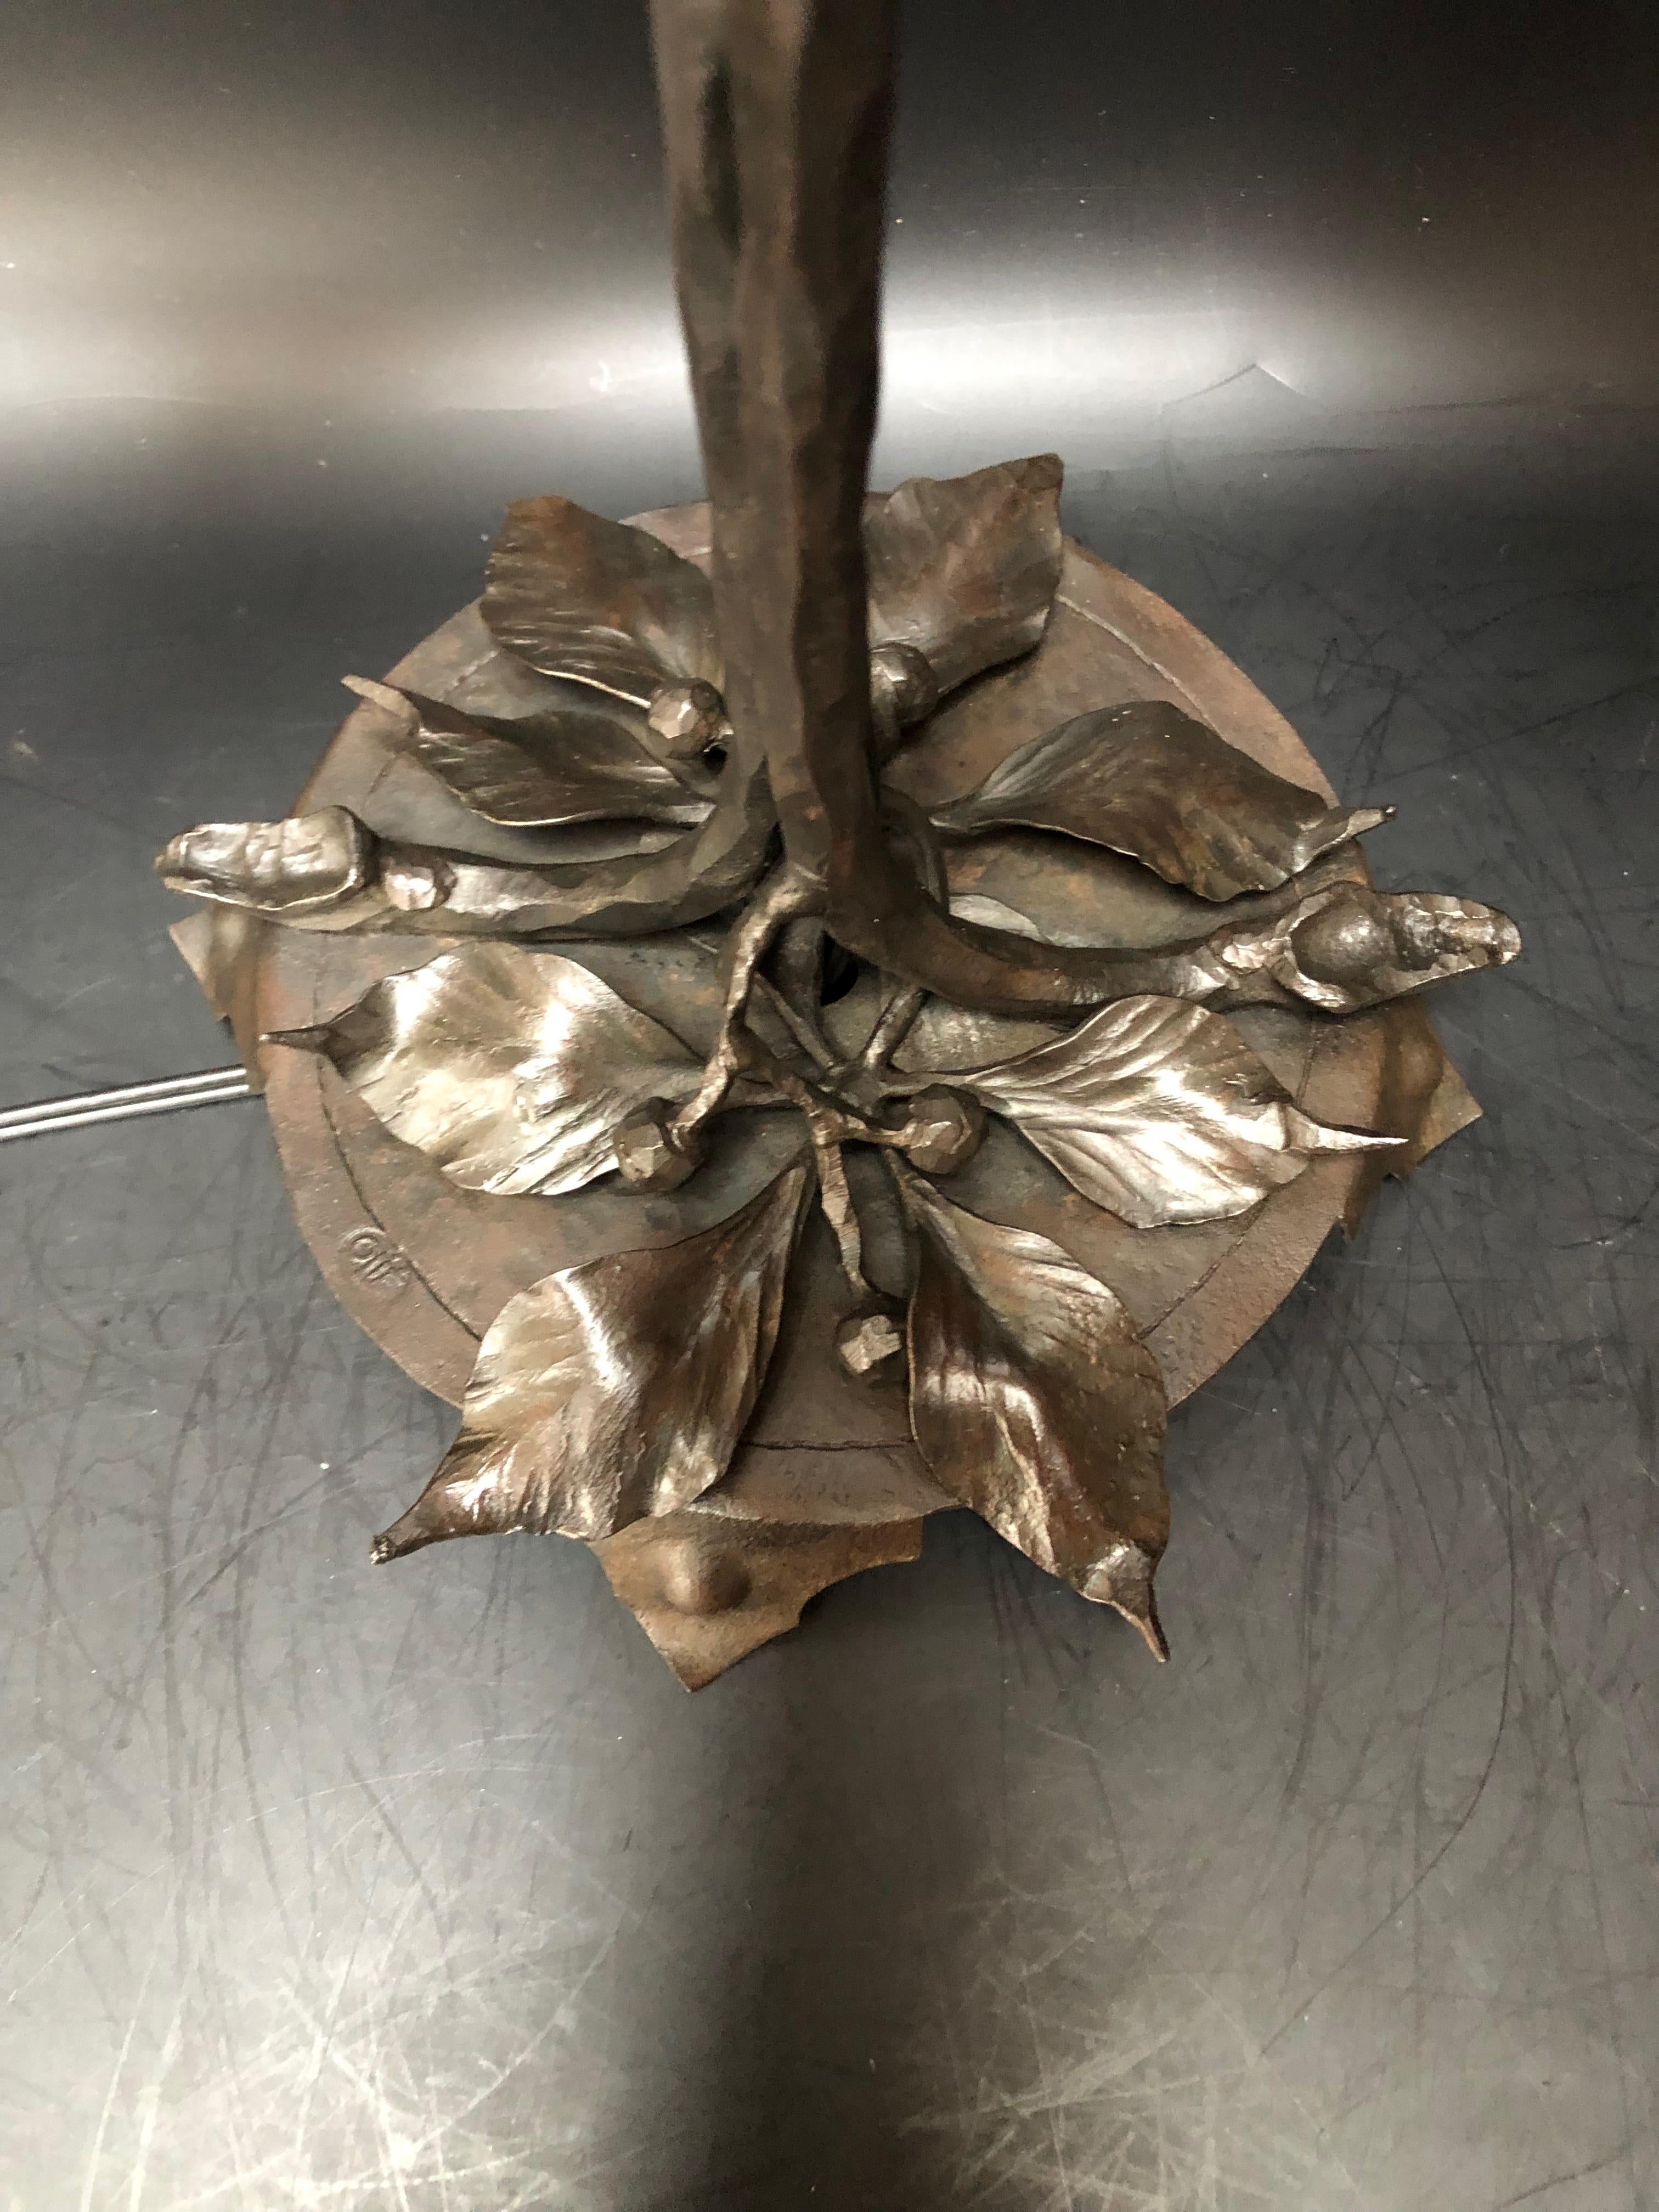 double lampe art nouveau, circa 1915
Pied en fer forgé à décor floral, estampillé Olié.
Tulipes en pâte de verre signées Schneider.
Electrifié et en parfait état.

Hauteur : 55cm
Largeur : 31cm
Diamètre de la base : 18 cm
Poids : 1.9 kg

Charles